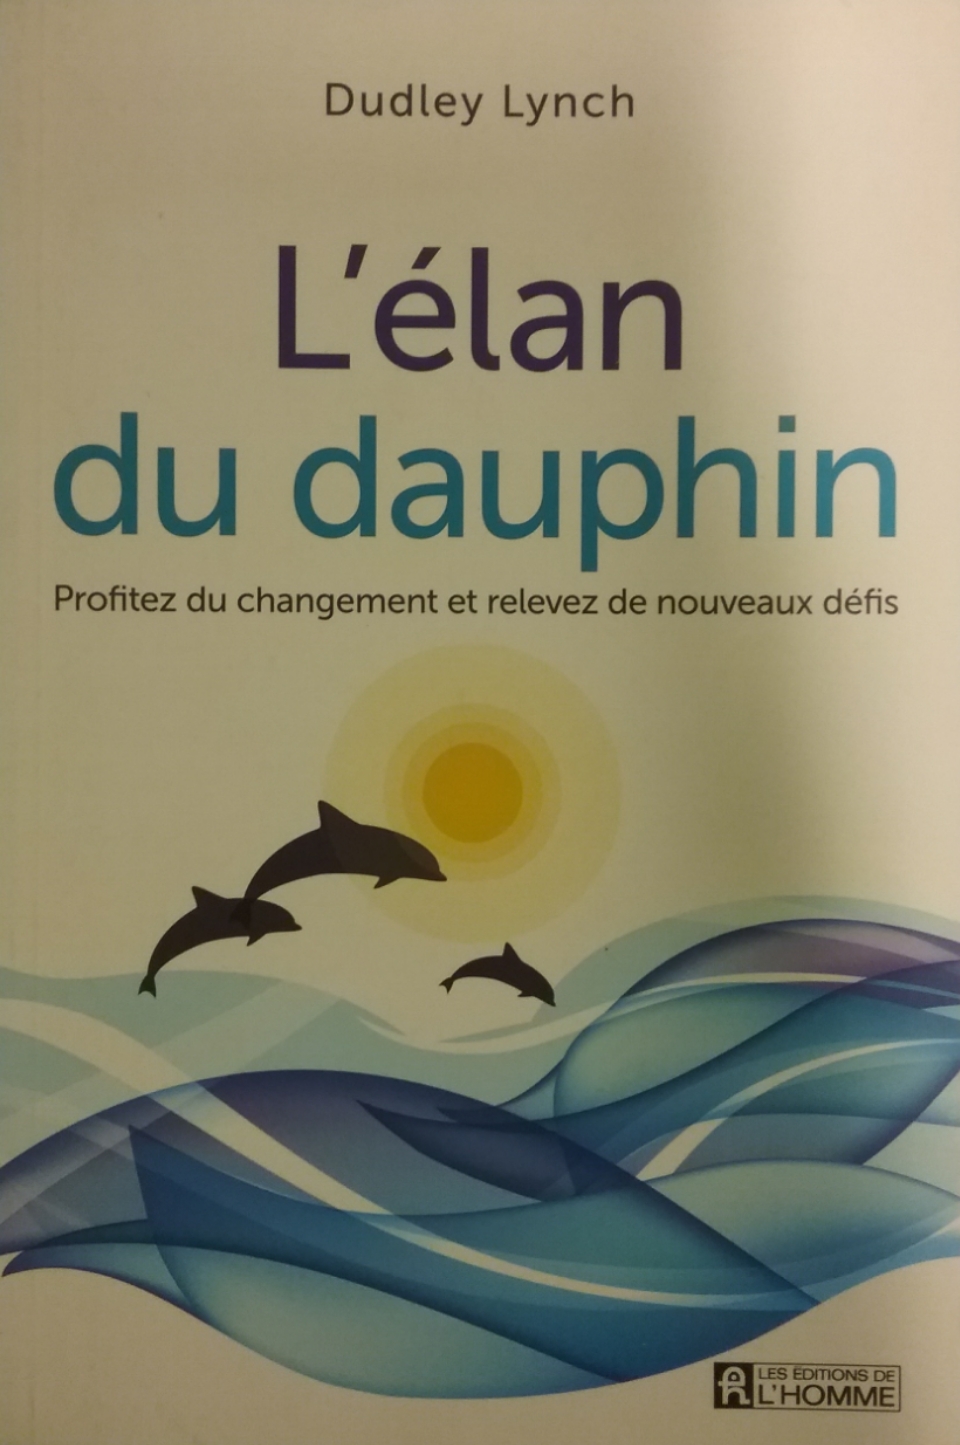 L'élan du dauphin profitez du changement et relevez de nouveaux défis Dudley Lynch